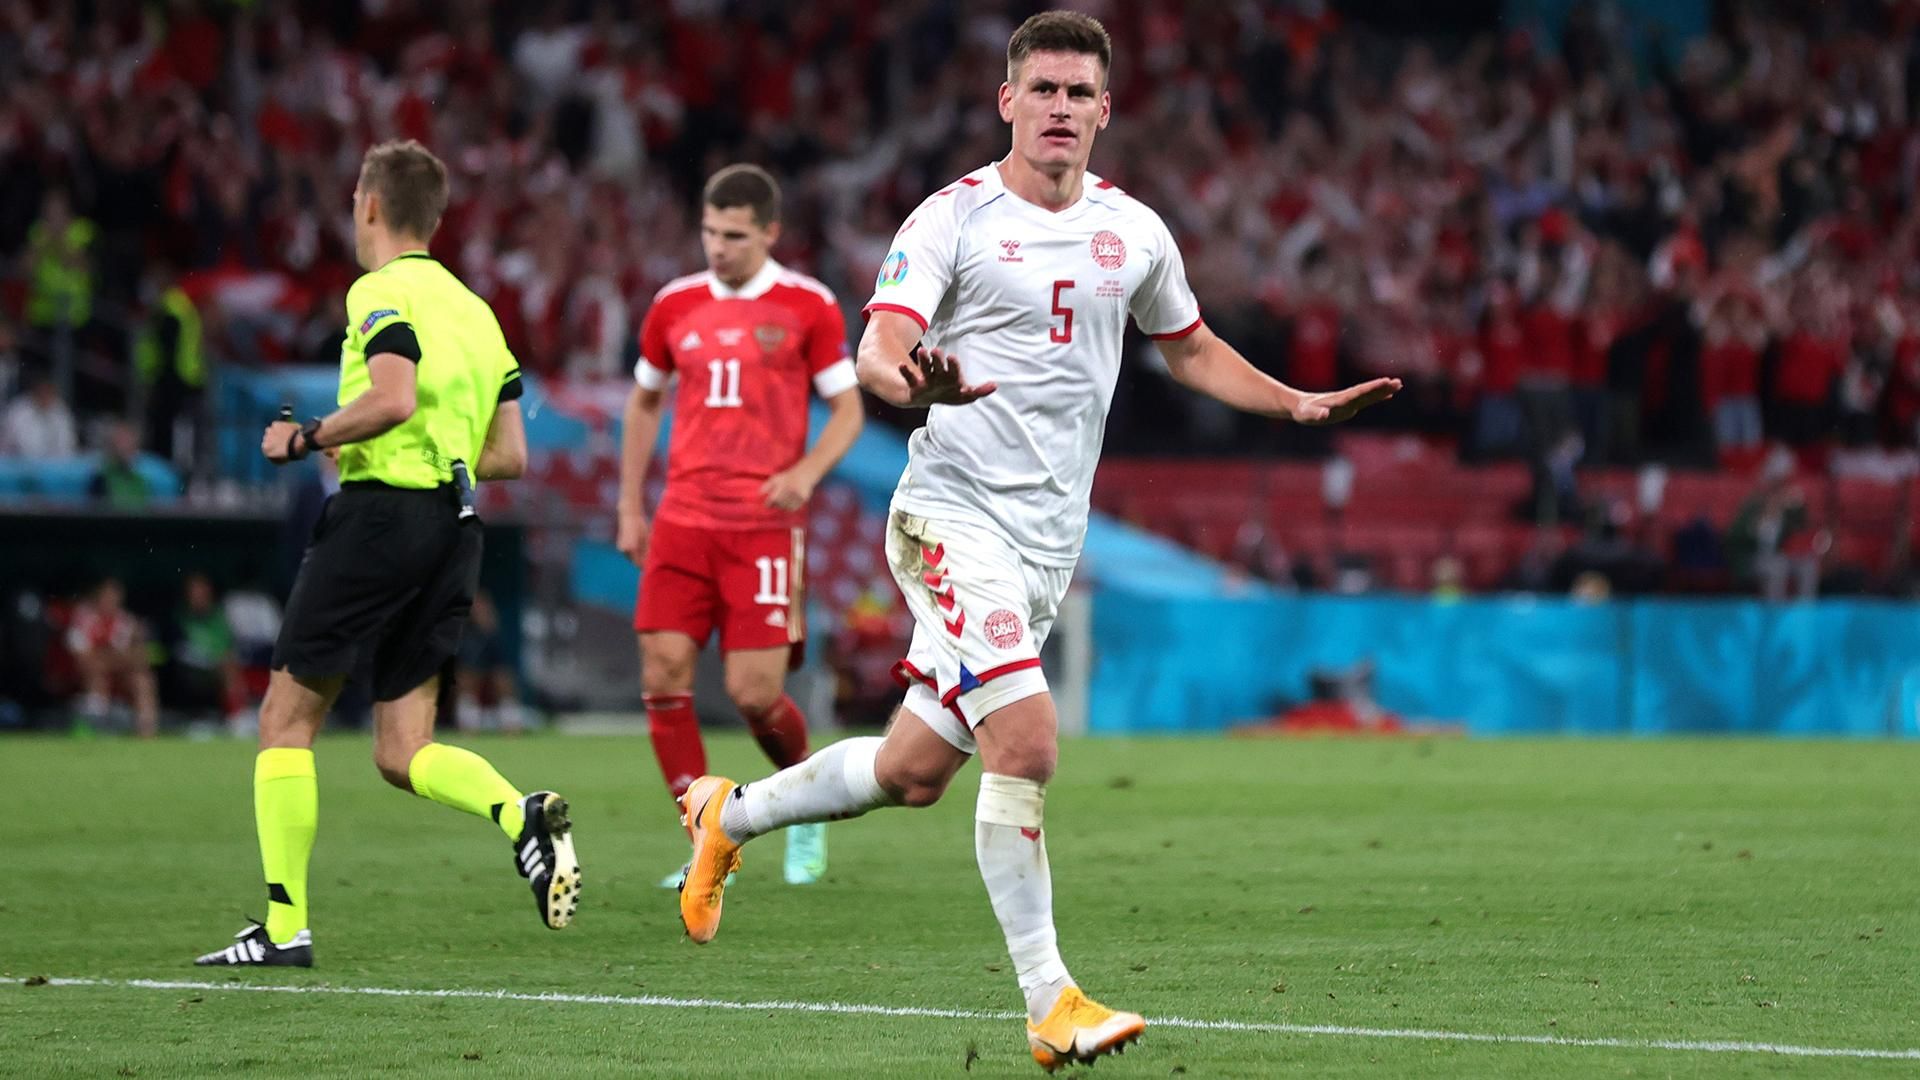 С*ка бл*ть, – игрок сборной Дании эмоционально отреагировал на разгром России на Евро-2020